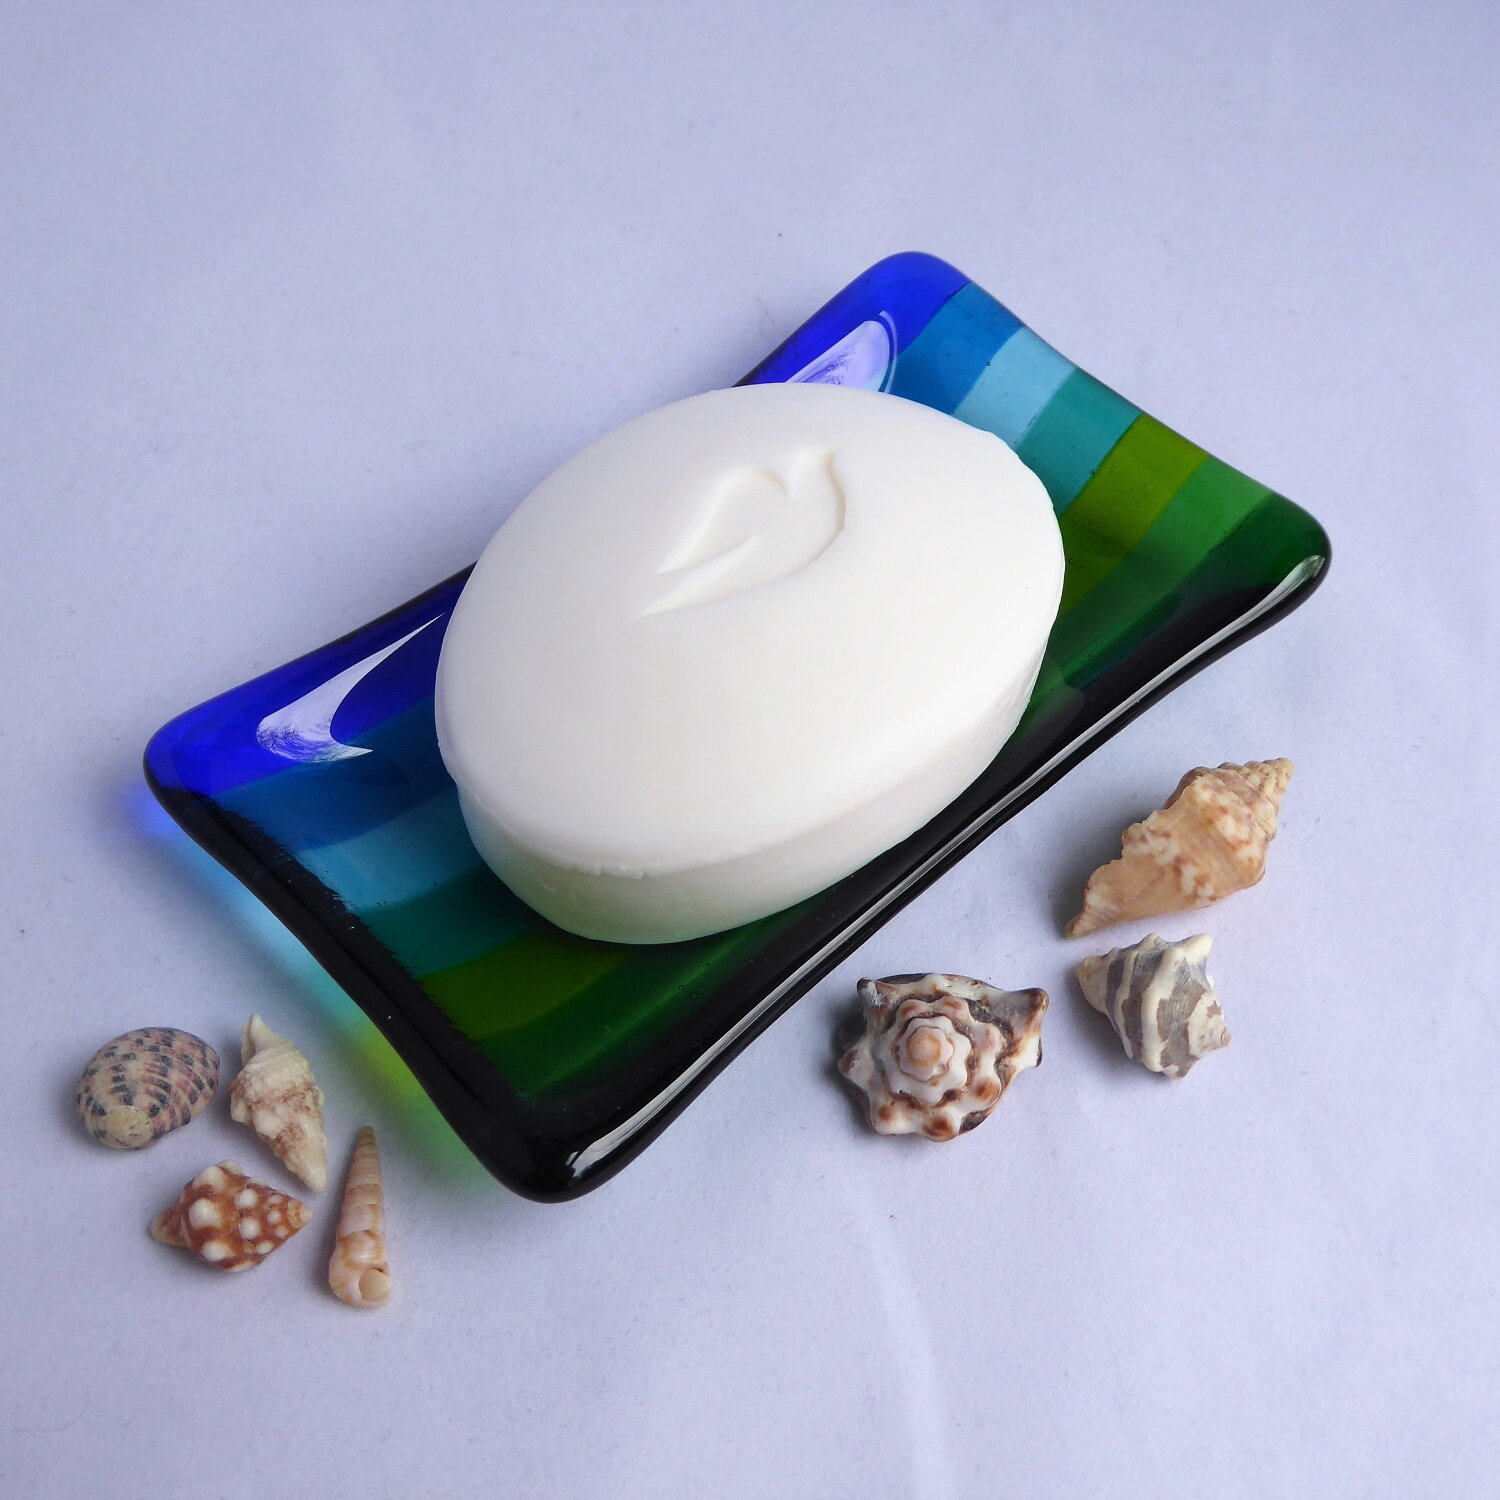 Aquamarine soap dish